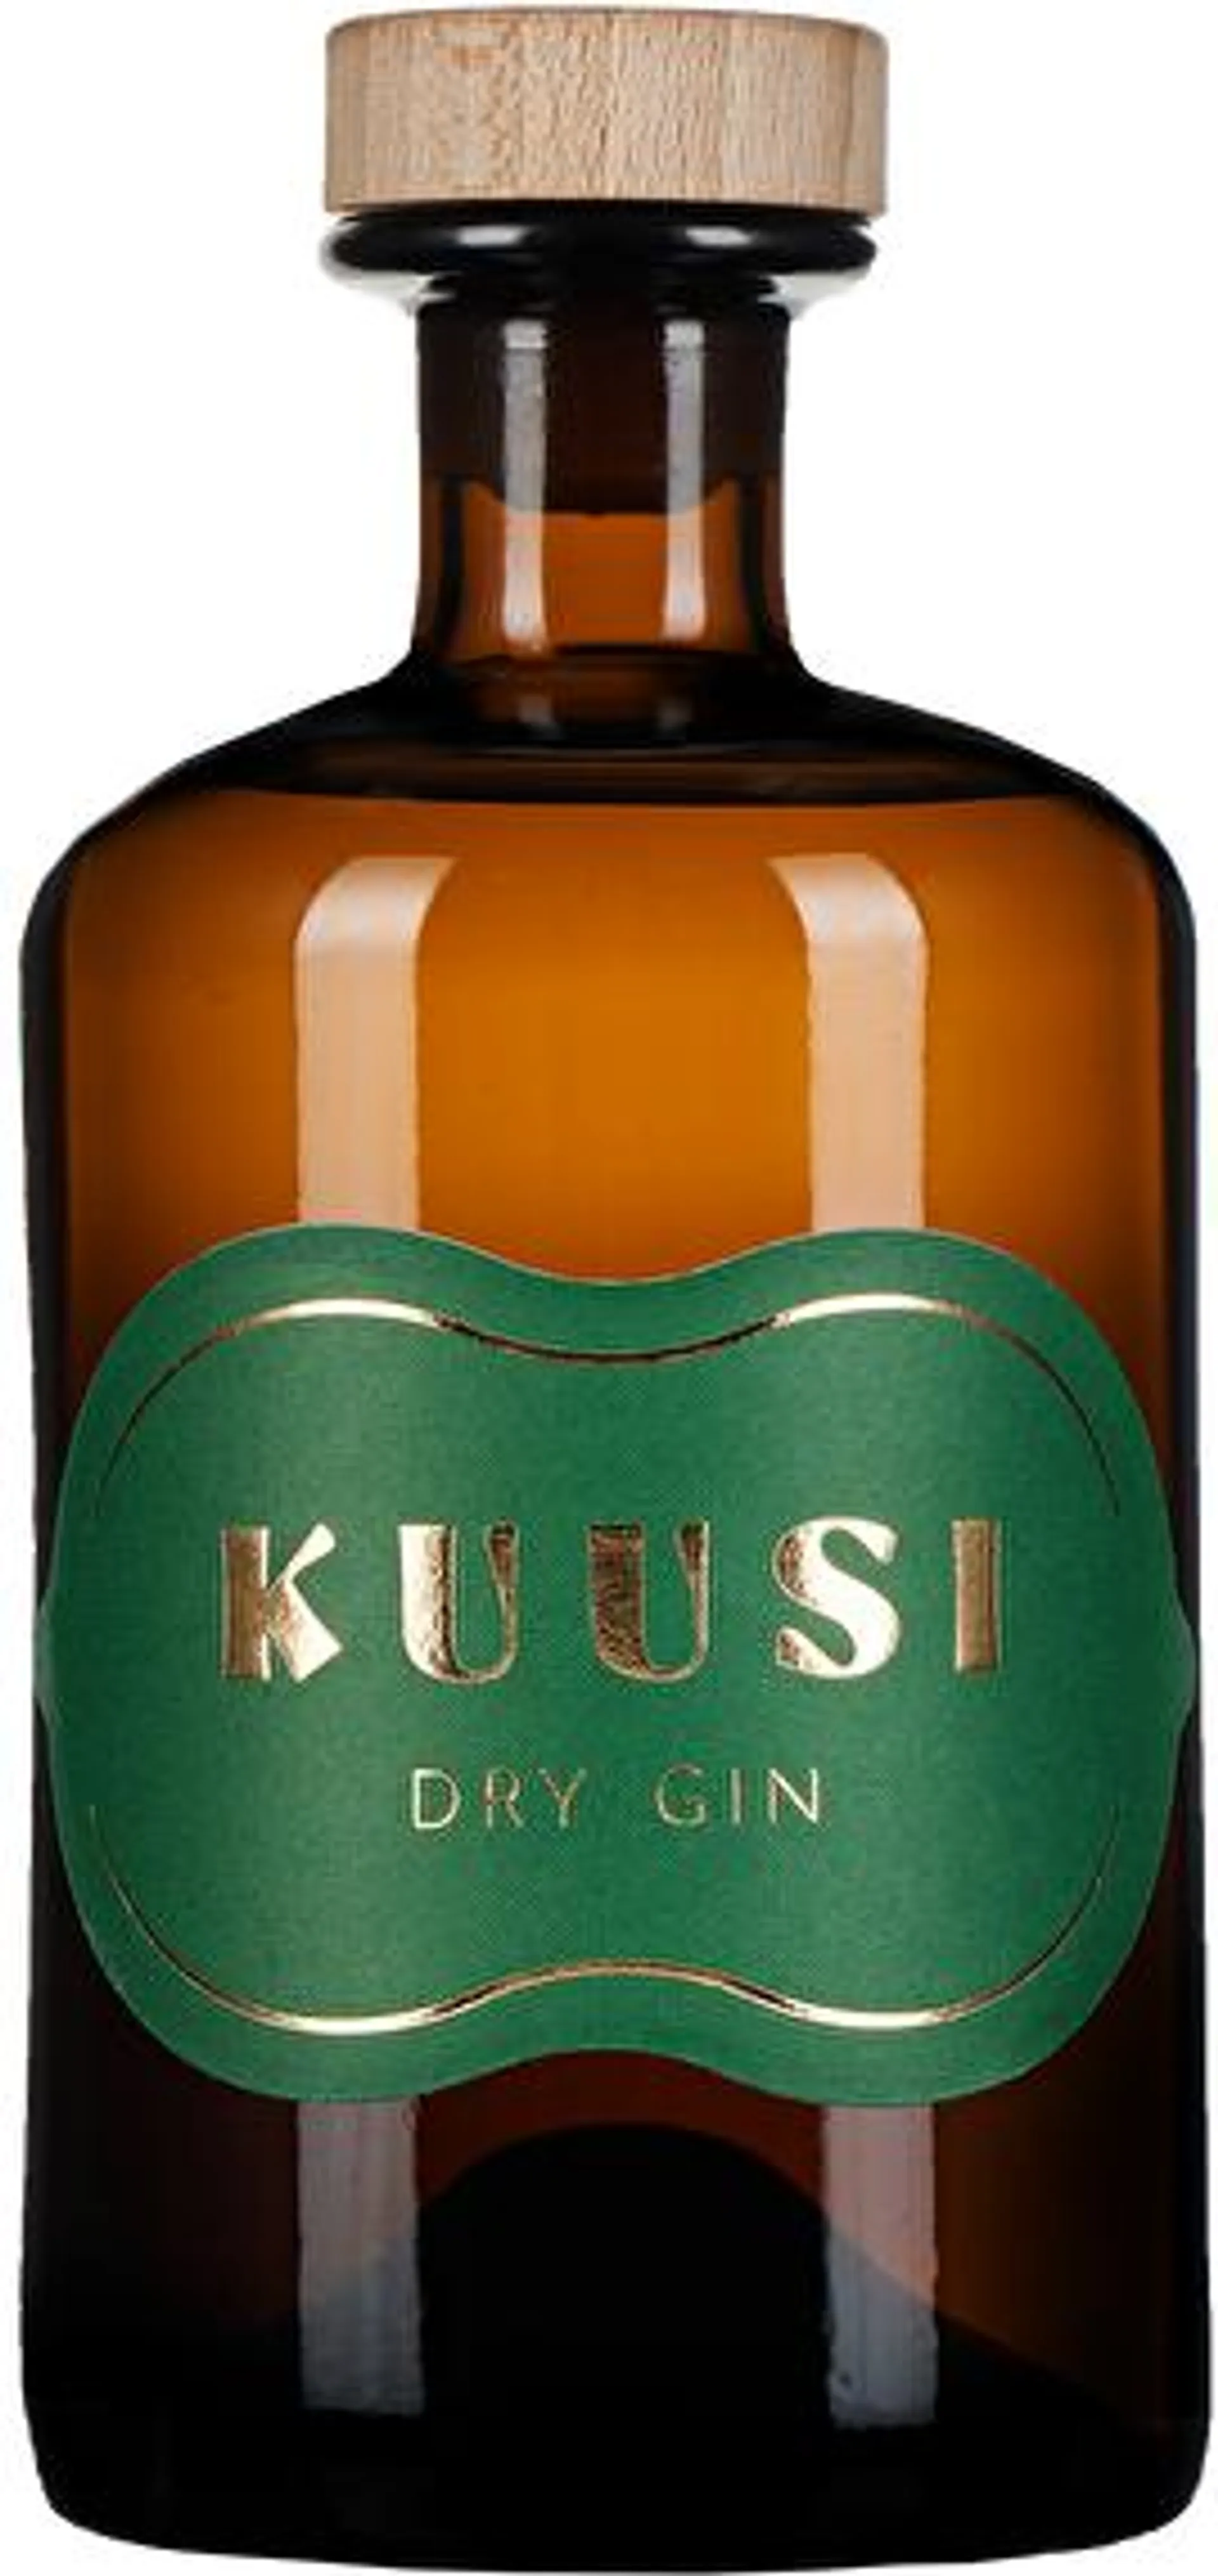 KUUSI Dry Gin 0,5 Liter